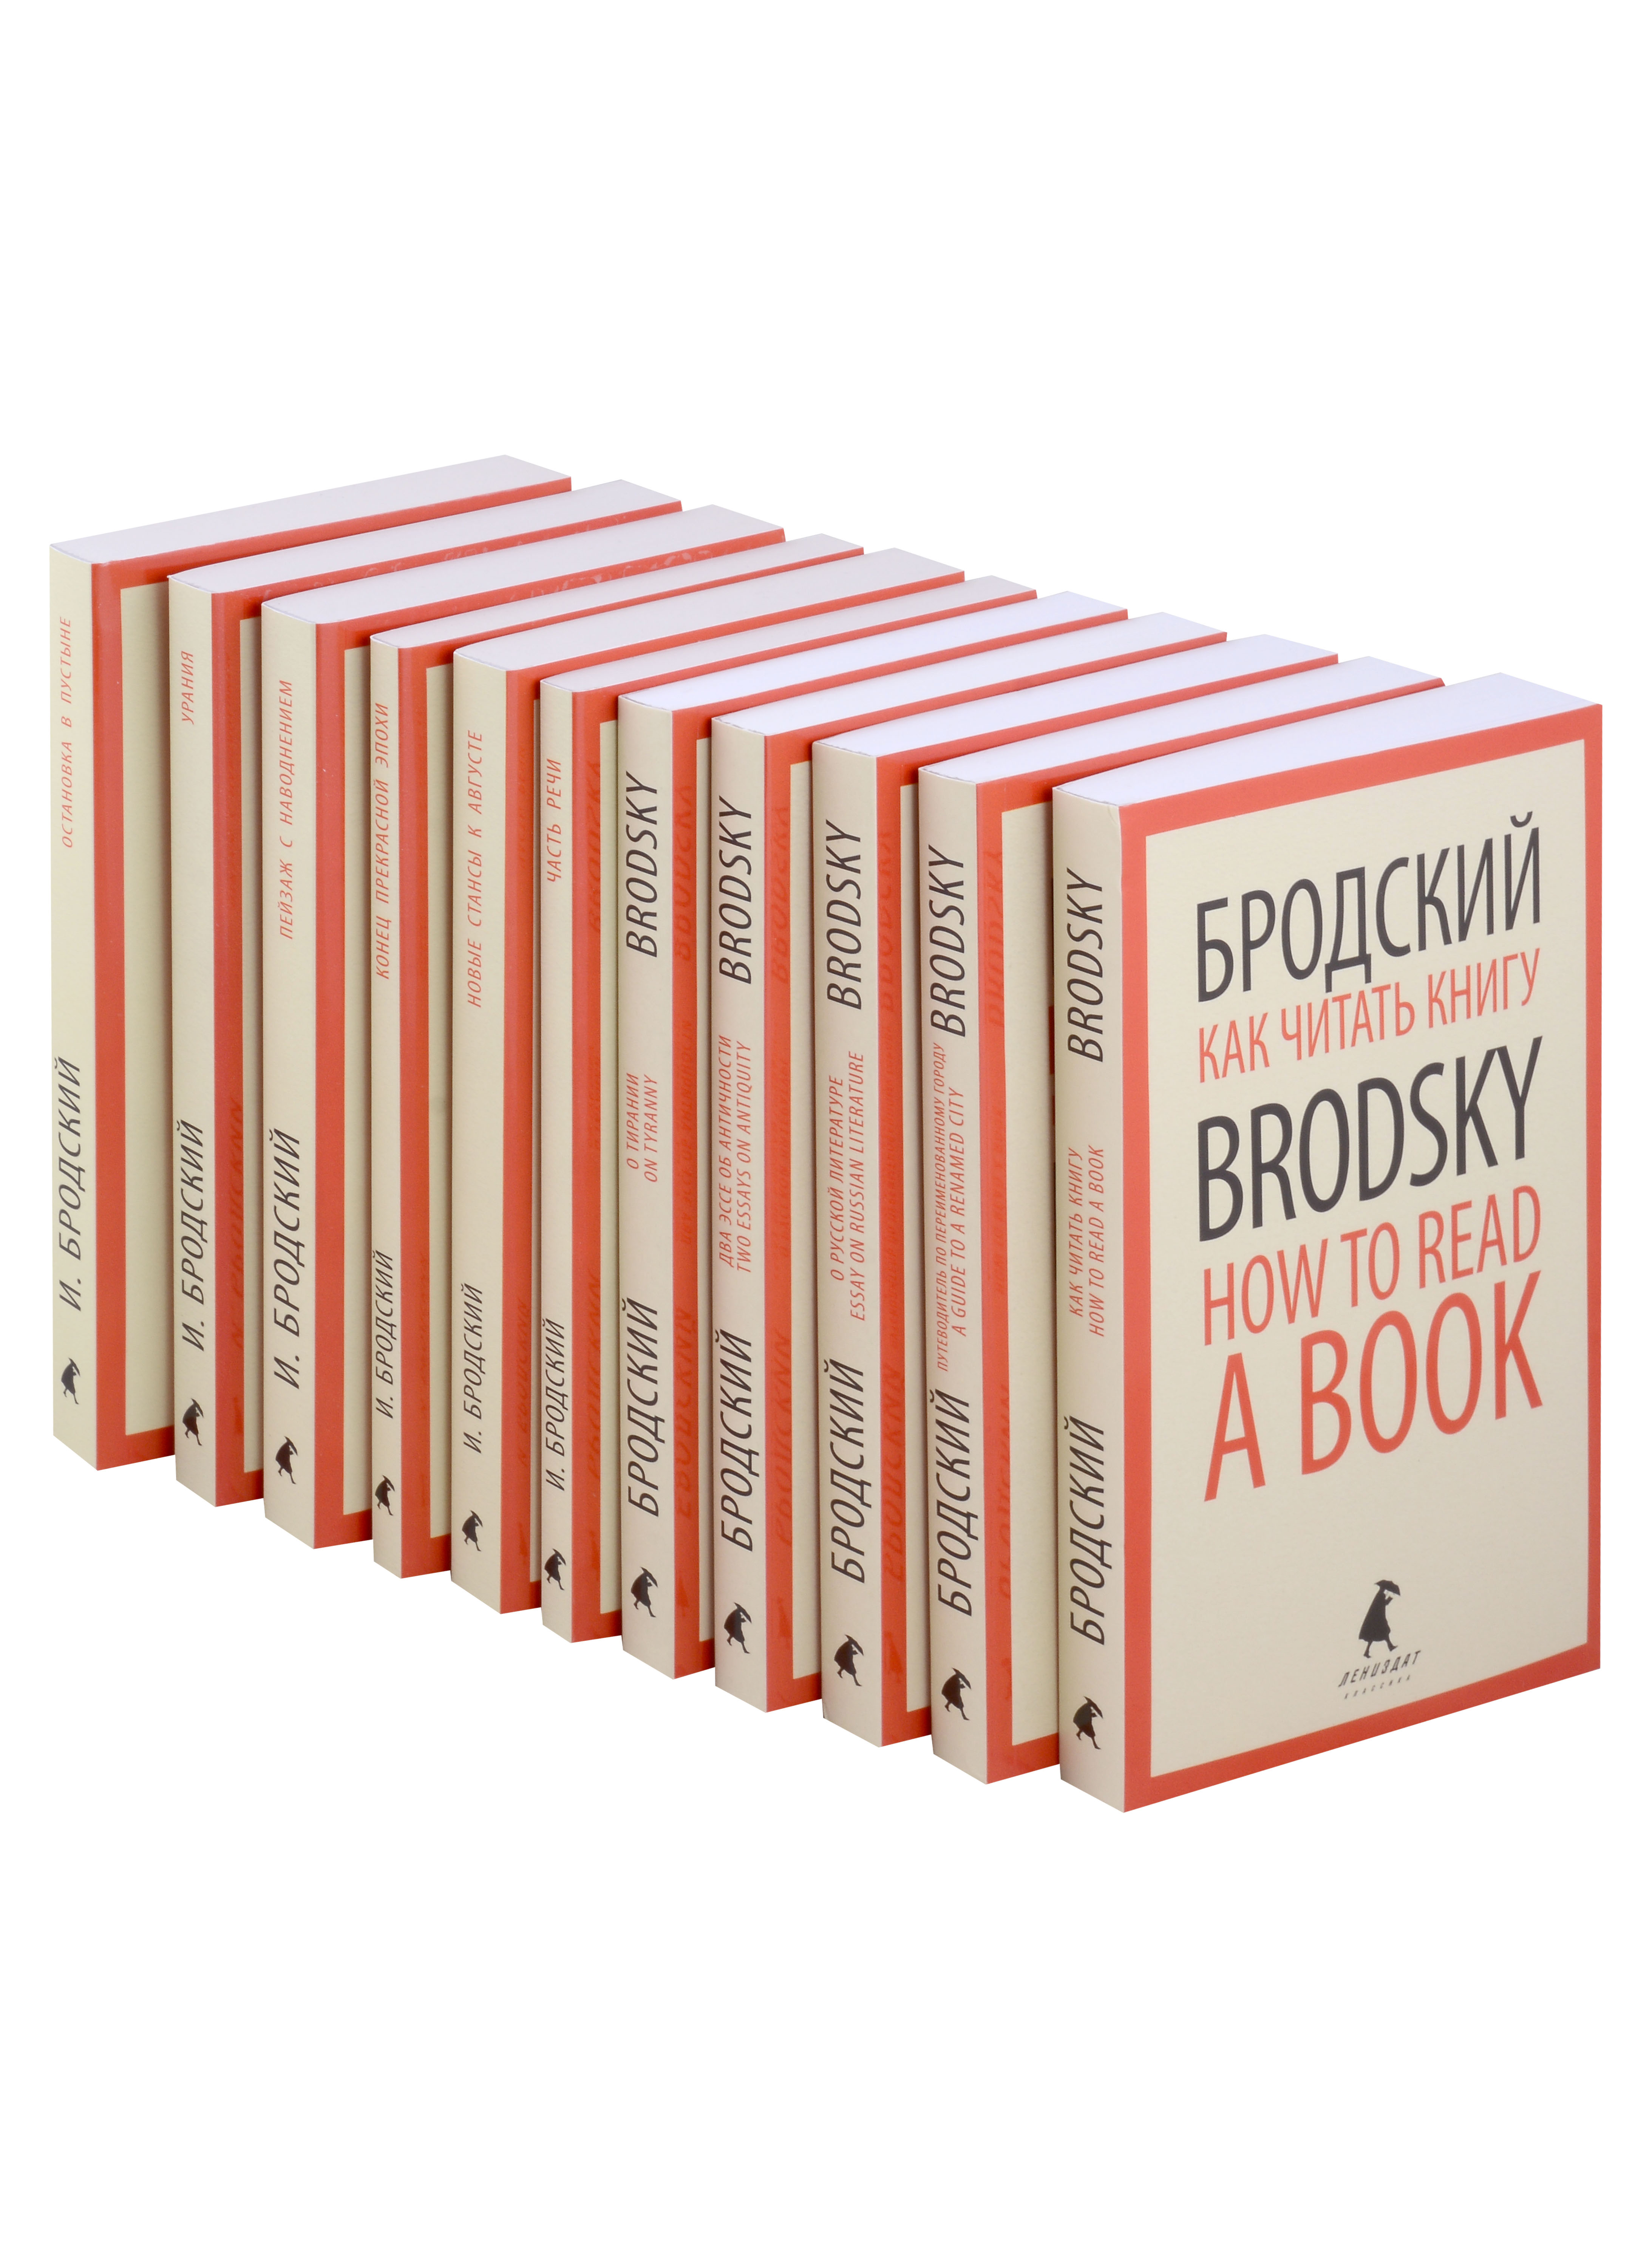 Иосиф Бродский. Собрание сочинений в формате pocket book (комплект из 11-ти книг)